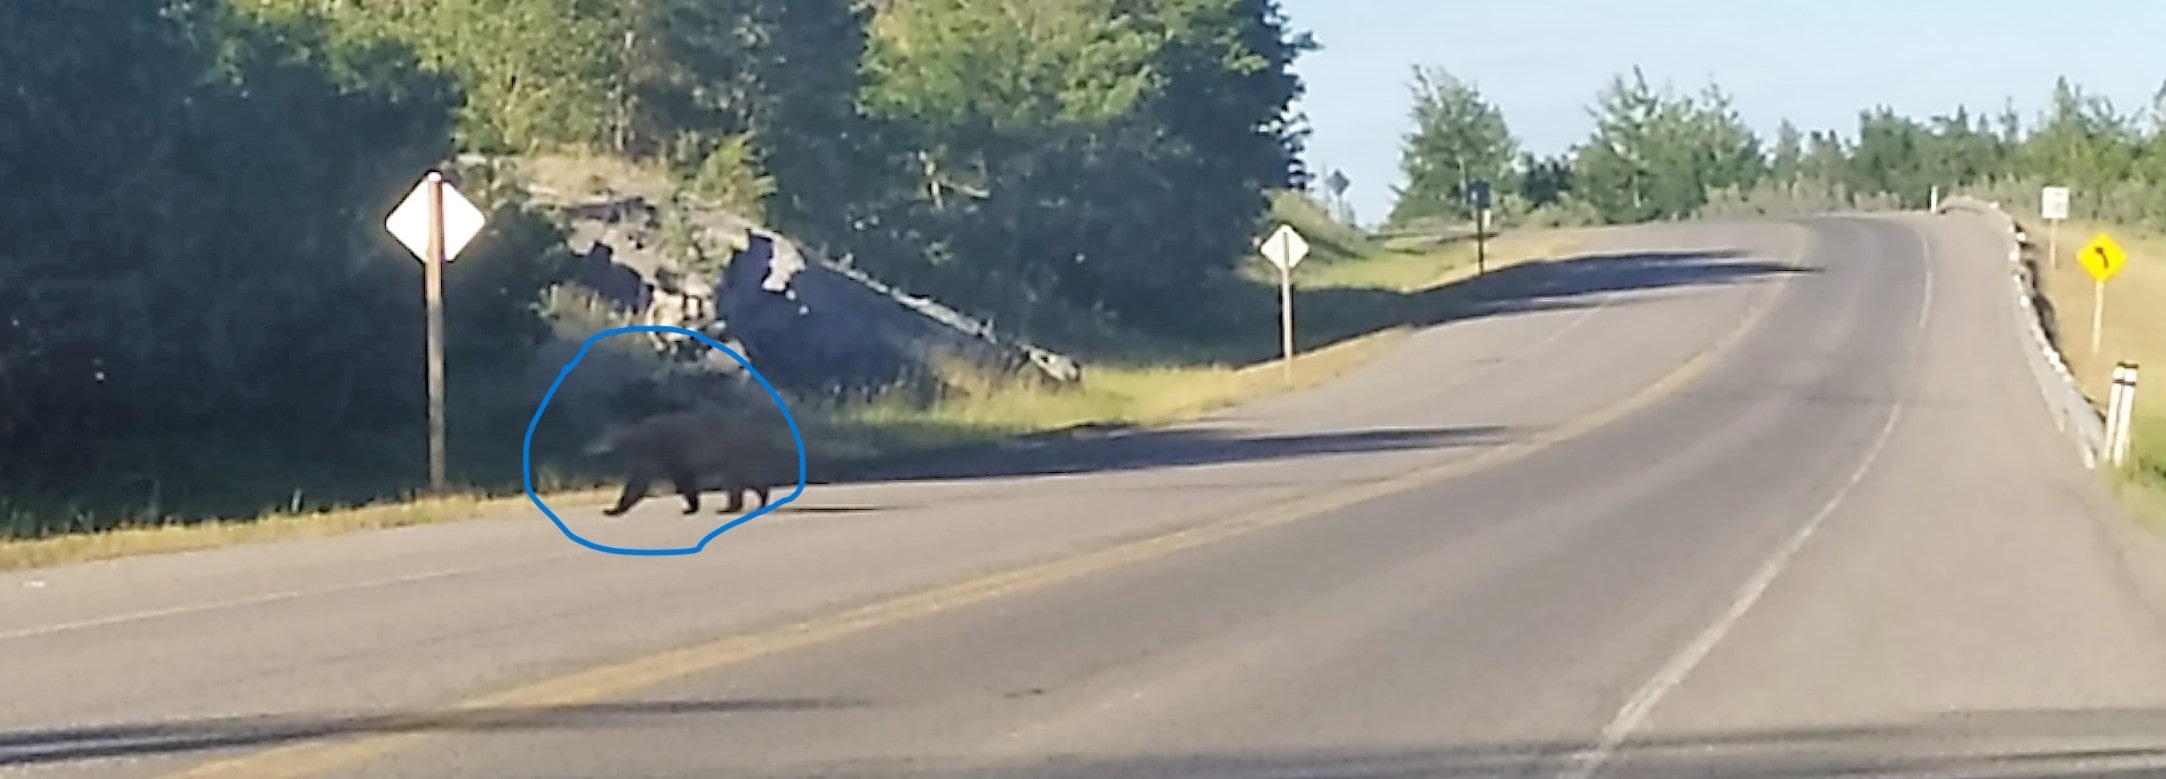 Un ours noirs traverse la route en pleine journée